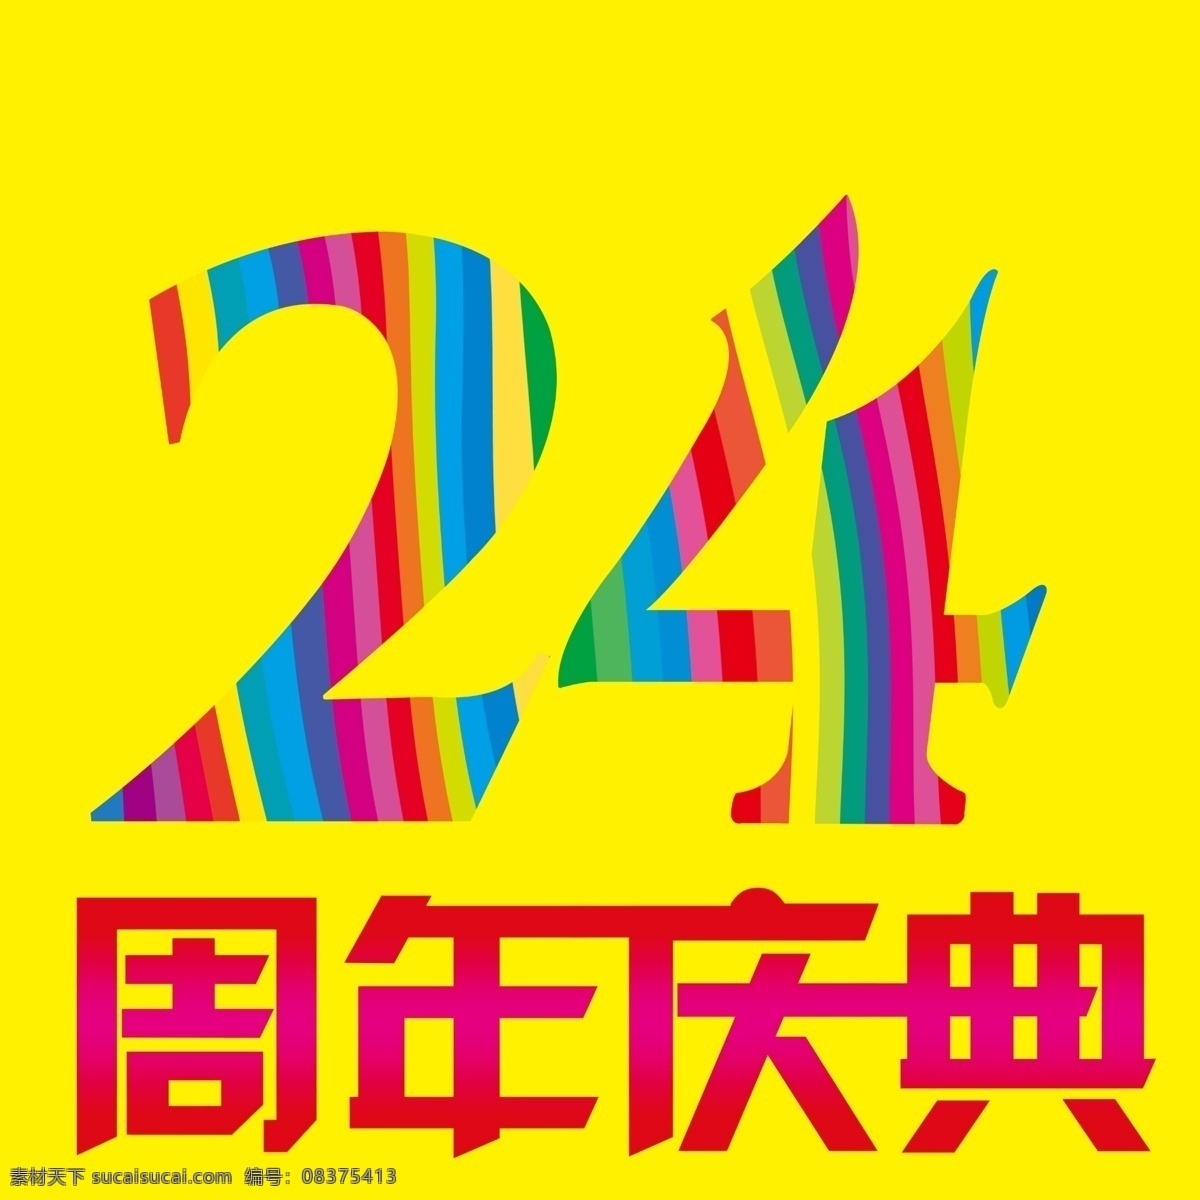 24周年庆典 24周年庆 周年庆 周年庆典 庆典 24周年 店庆 家电 节庆 促销 单 页 海报